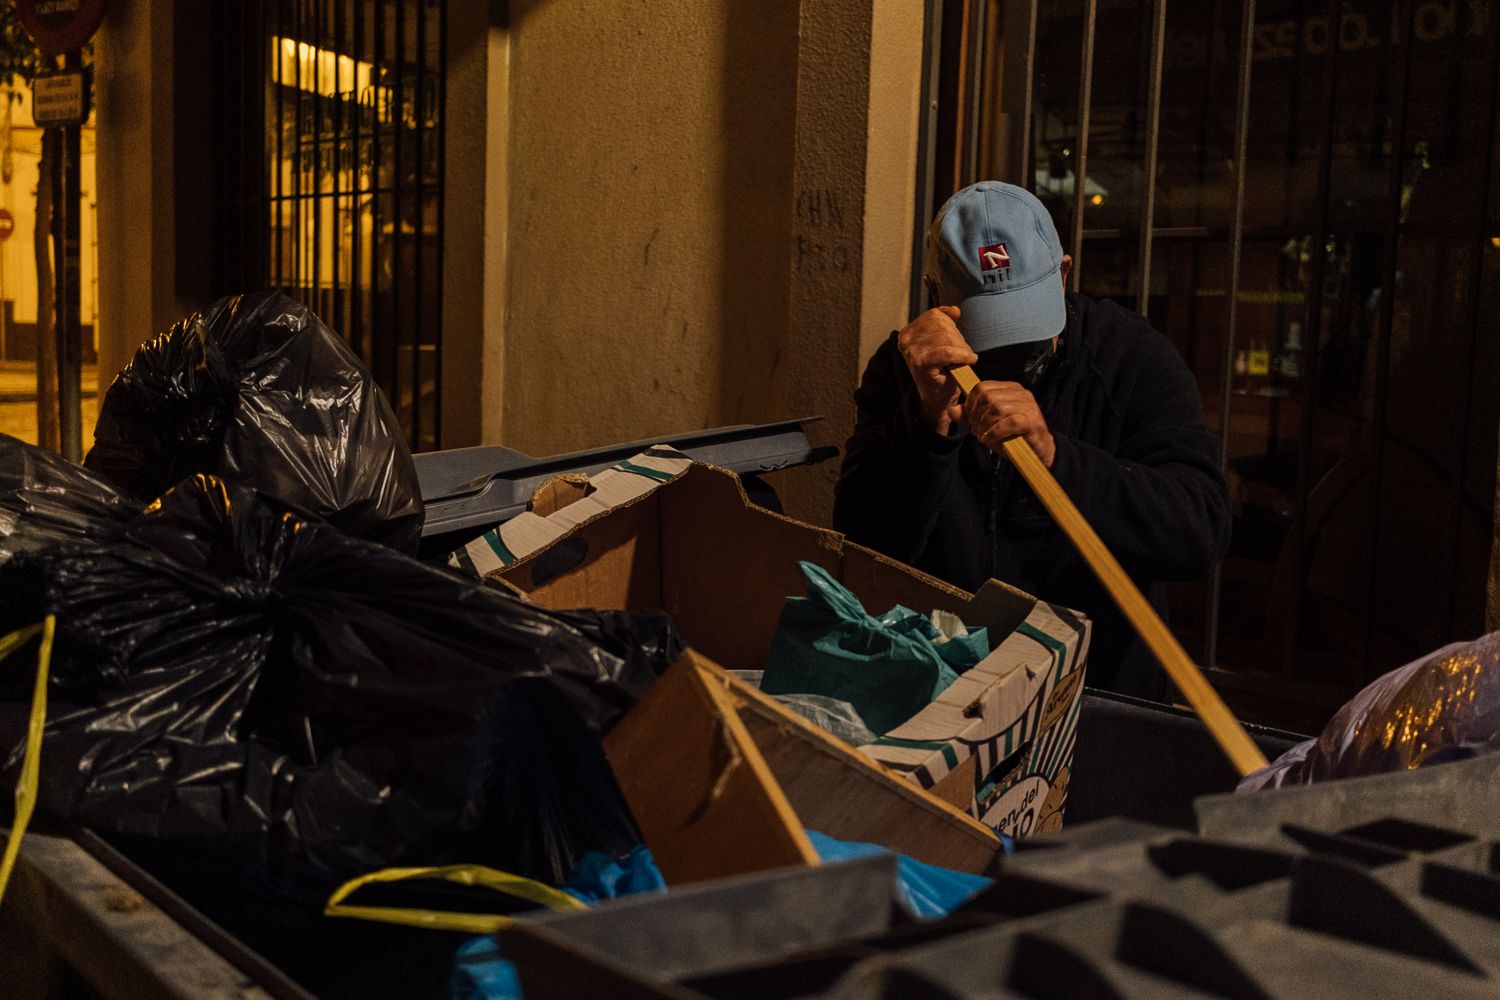 Cáritas dedica su campaña de Navidad "a las personas que sufren la guerra y la exclusión social". Una persona buscado entre la basura.